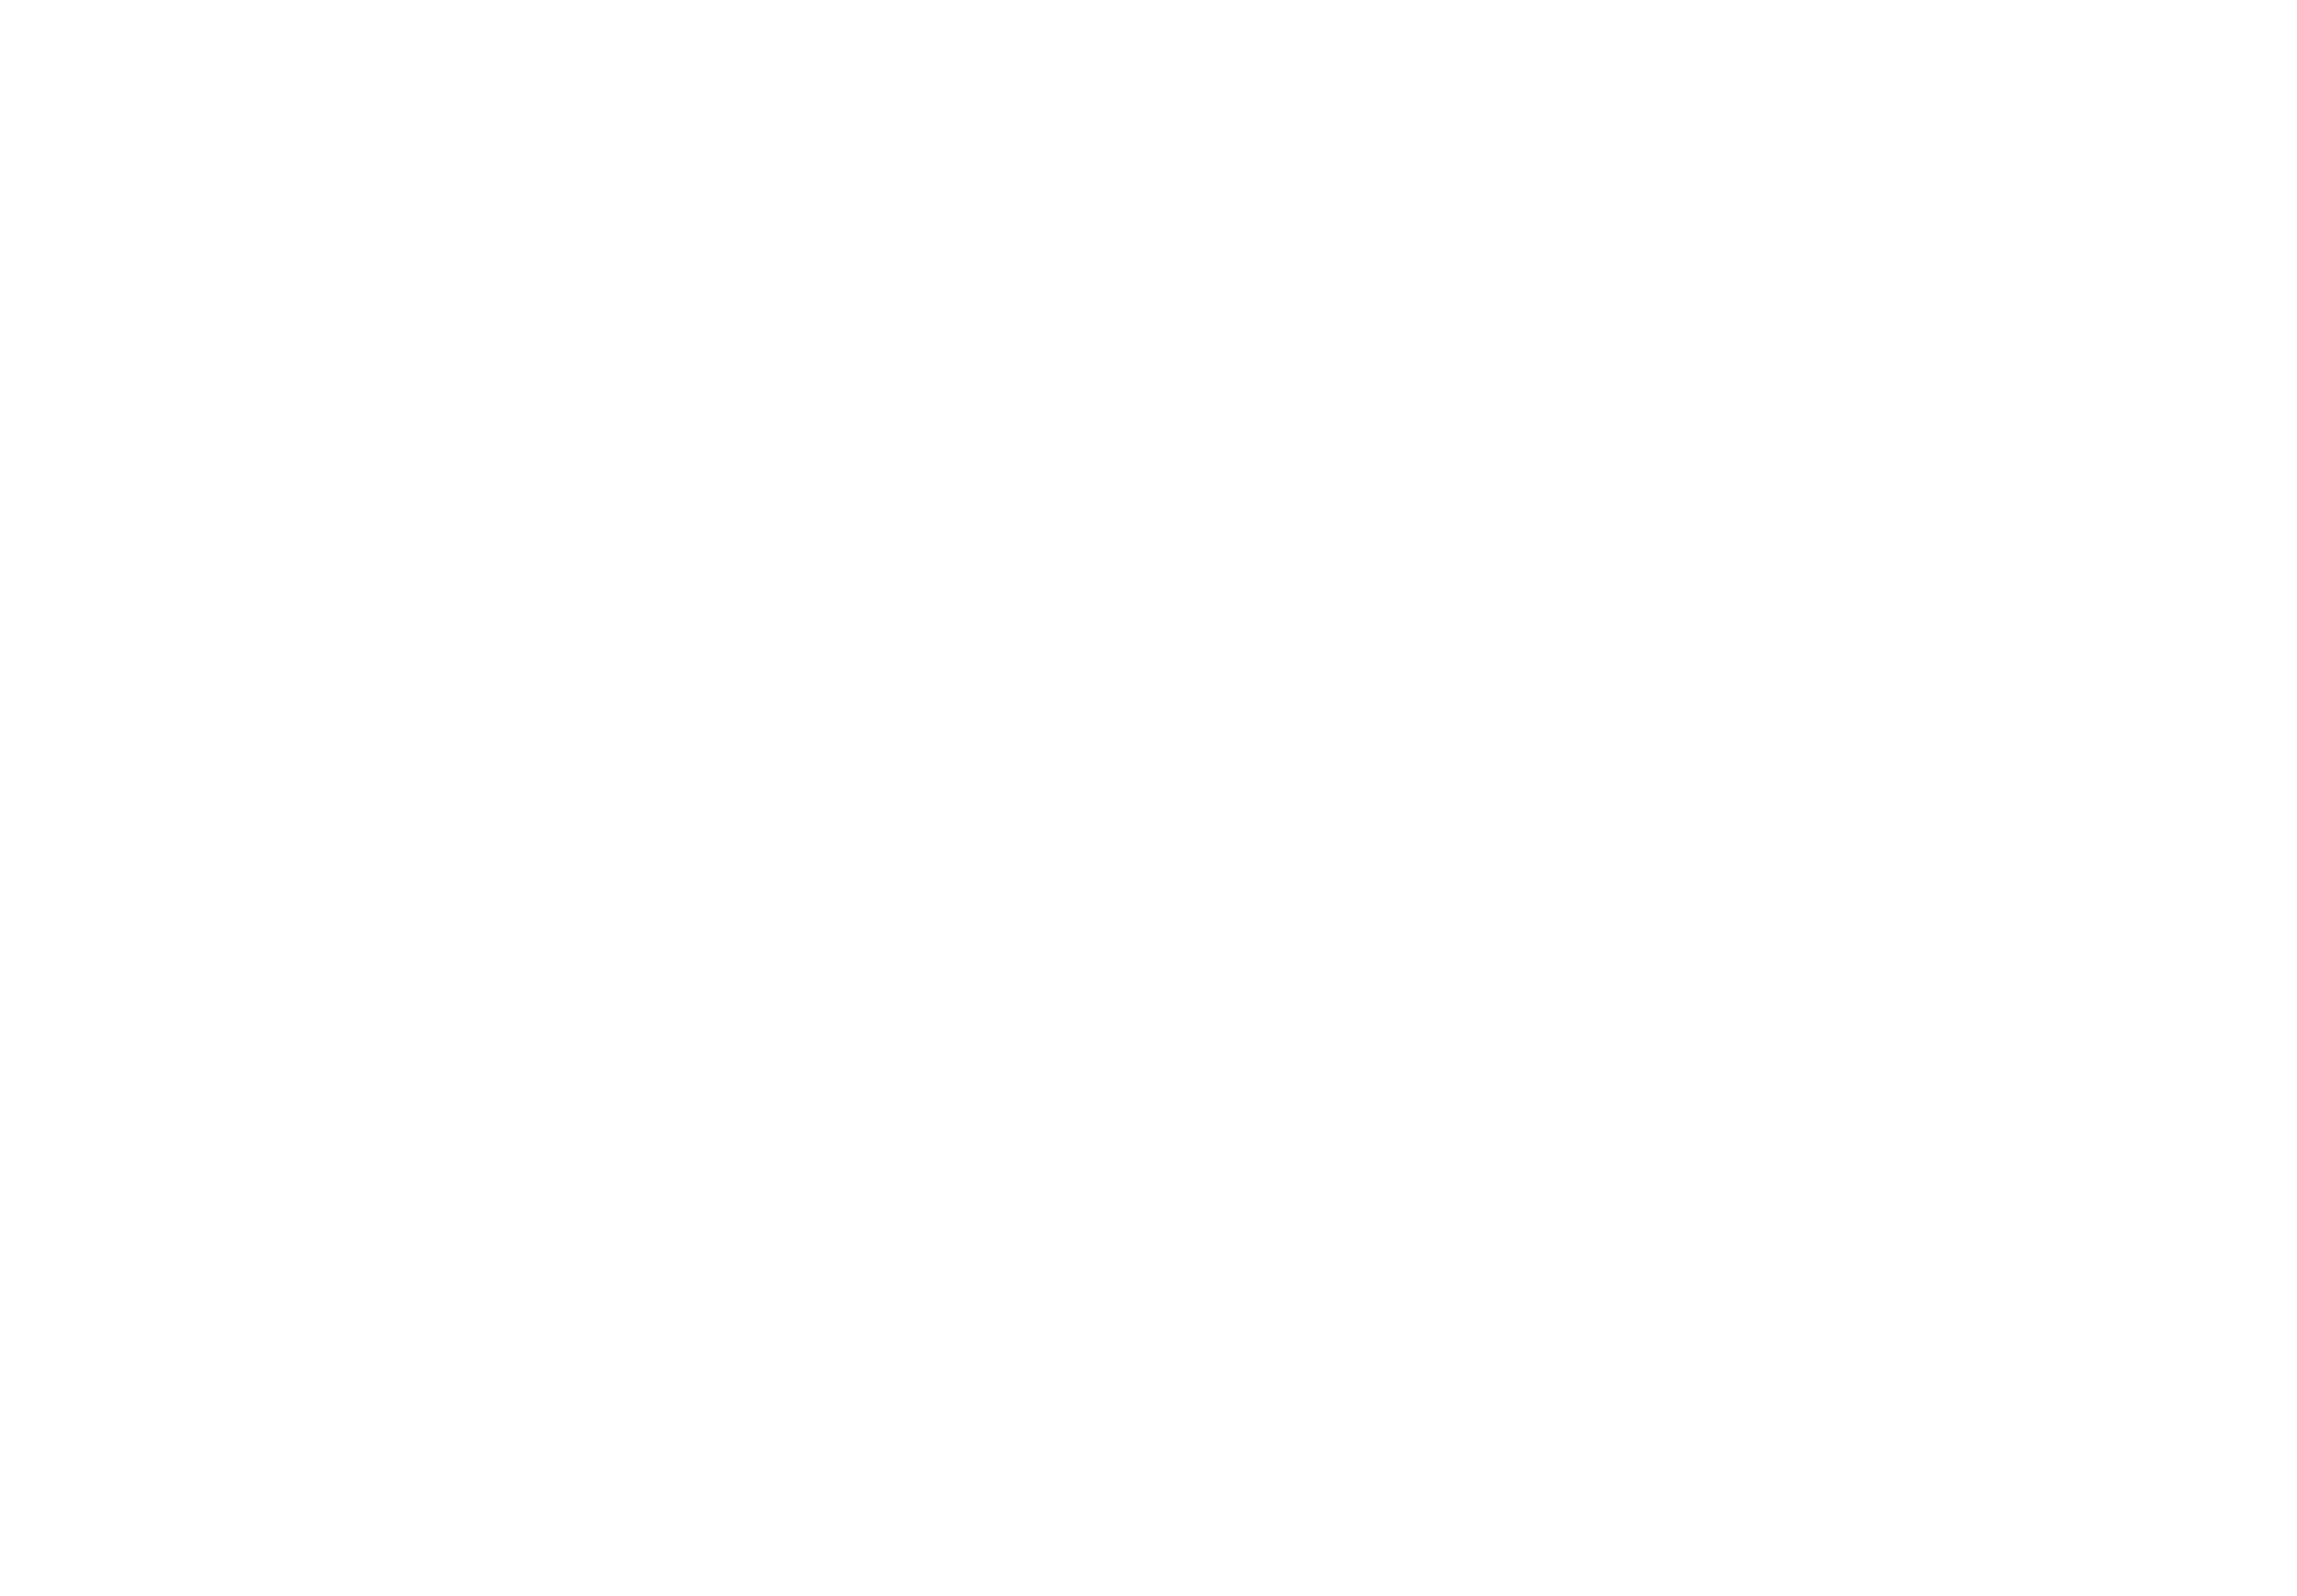 Figleaf Bar & Lounge - Logo